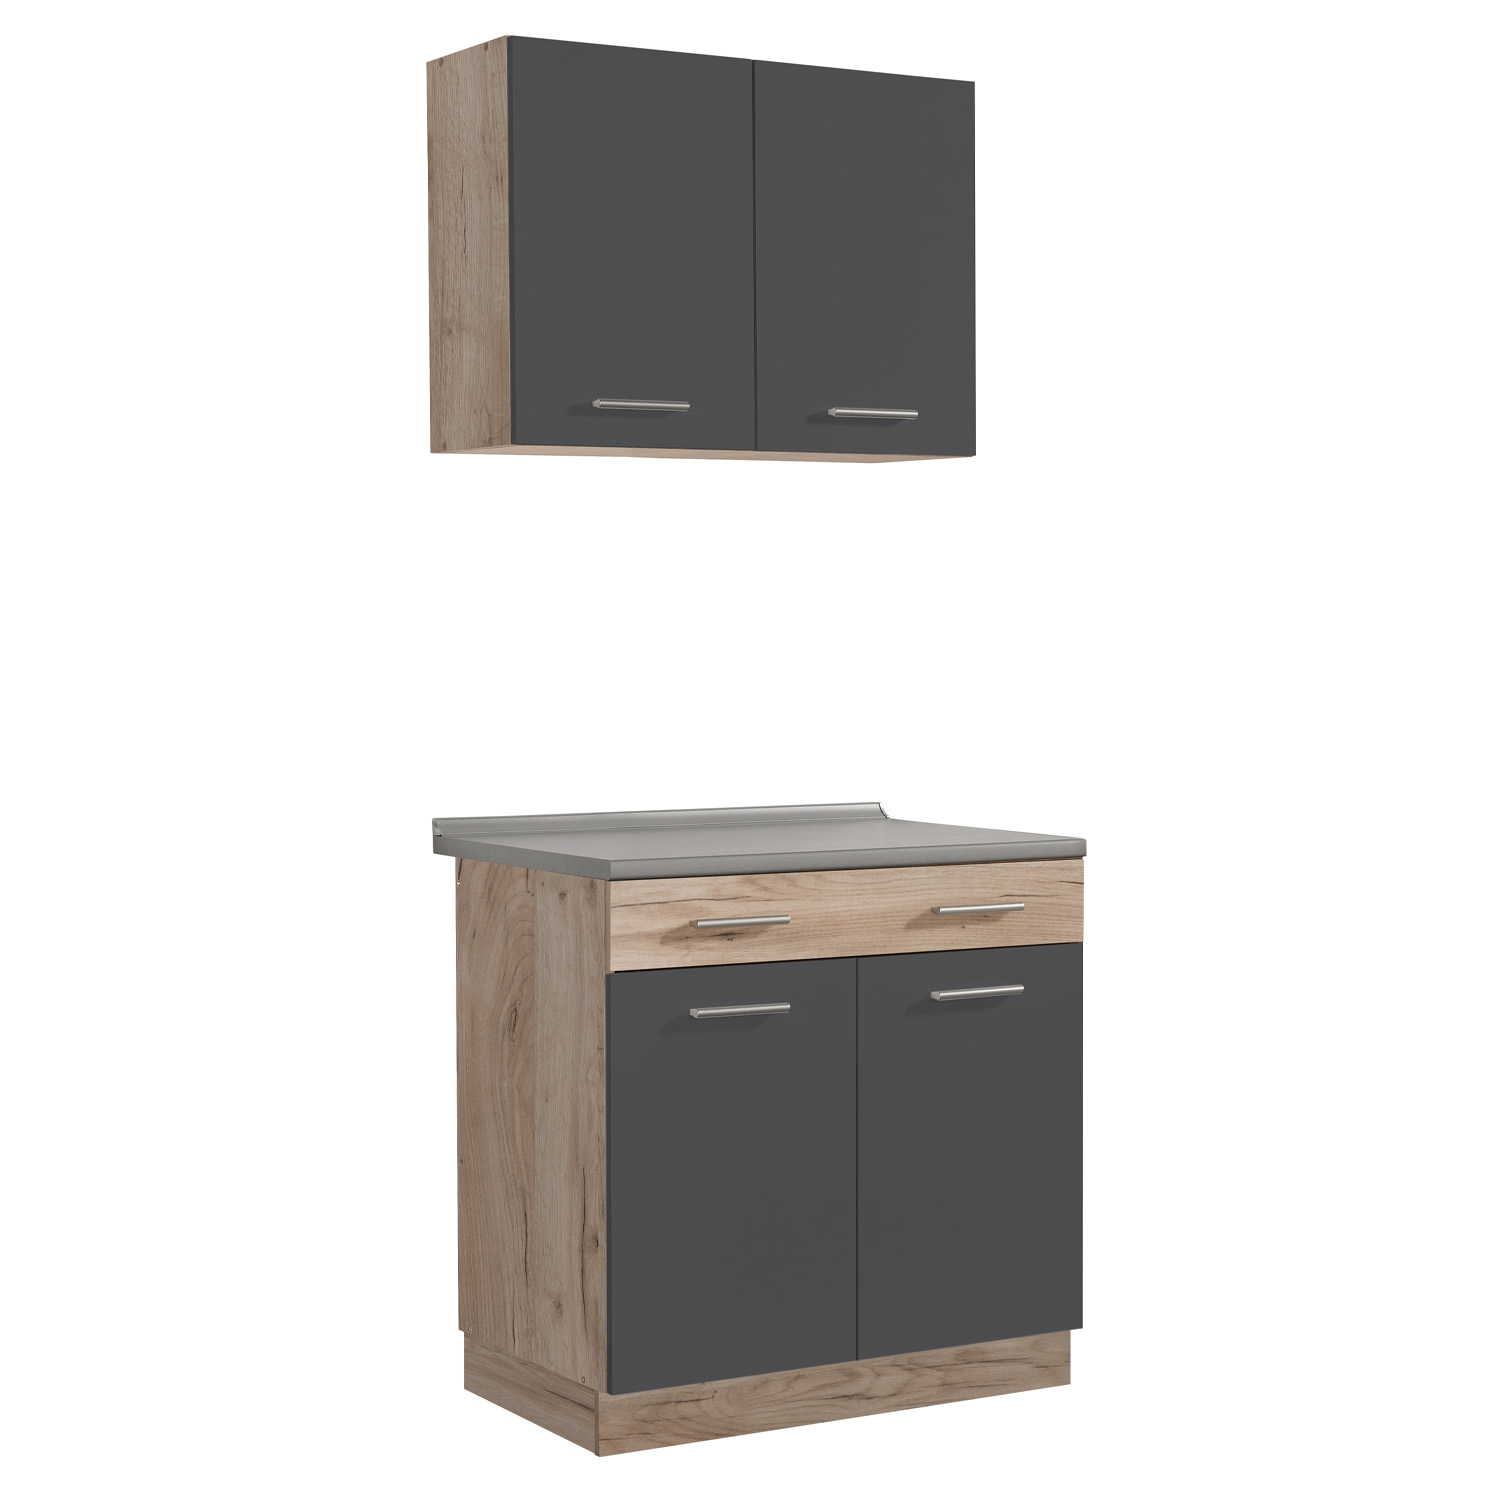 Modern Kitchen Grey Wood Kitchen Island Kitchen Cabinets Kitchen Units 80 cm Kitchen Cupboards